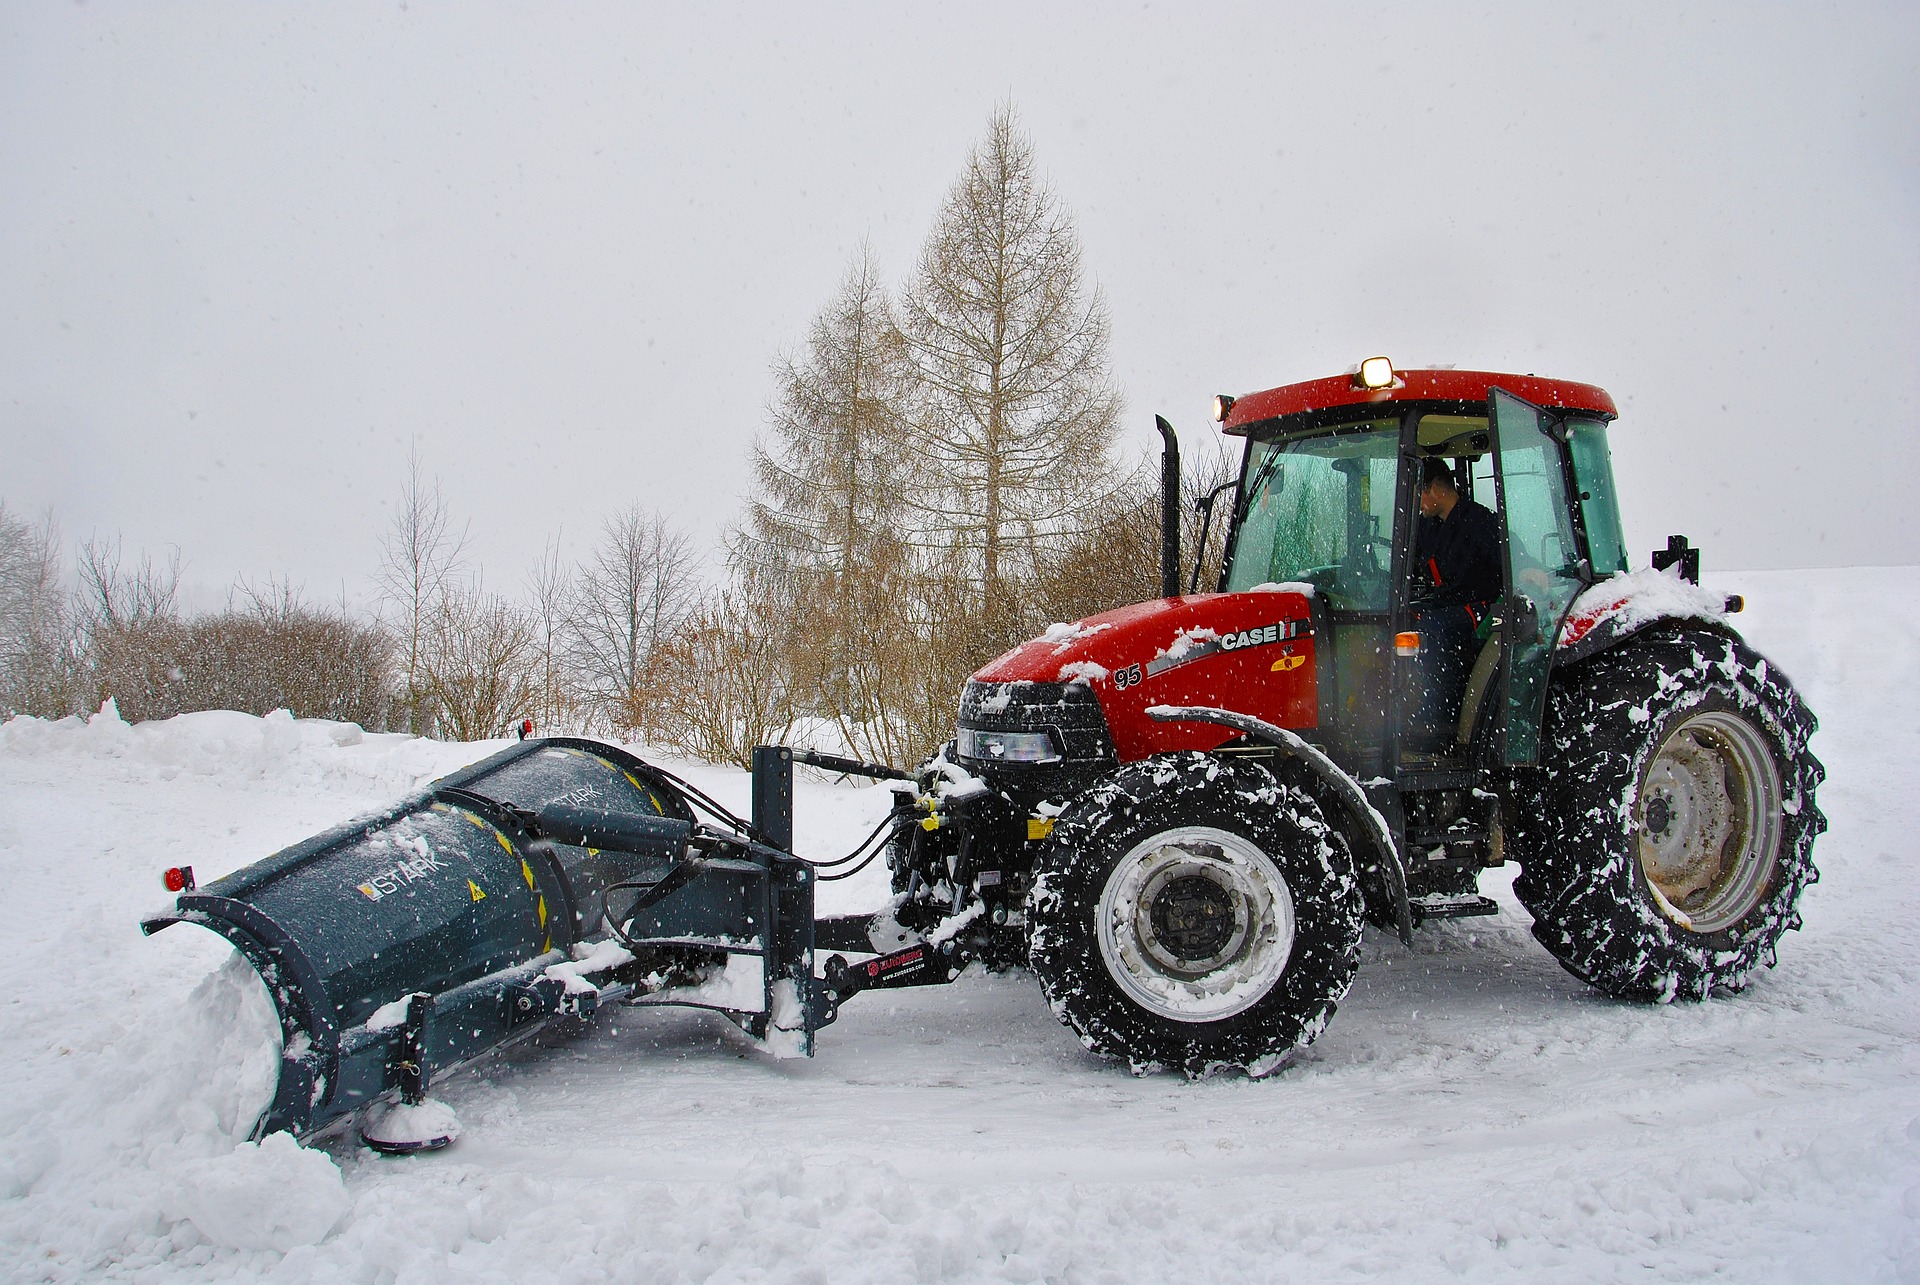 traktor plogar snöig väg